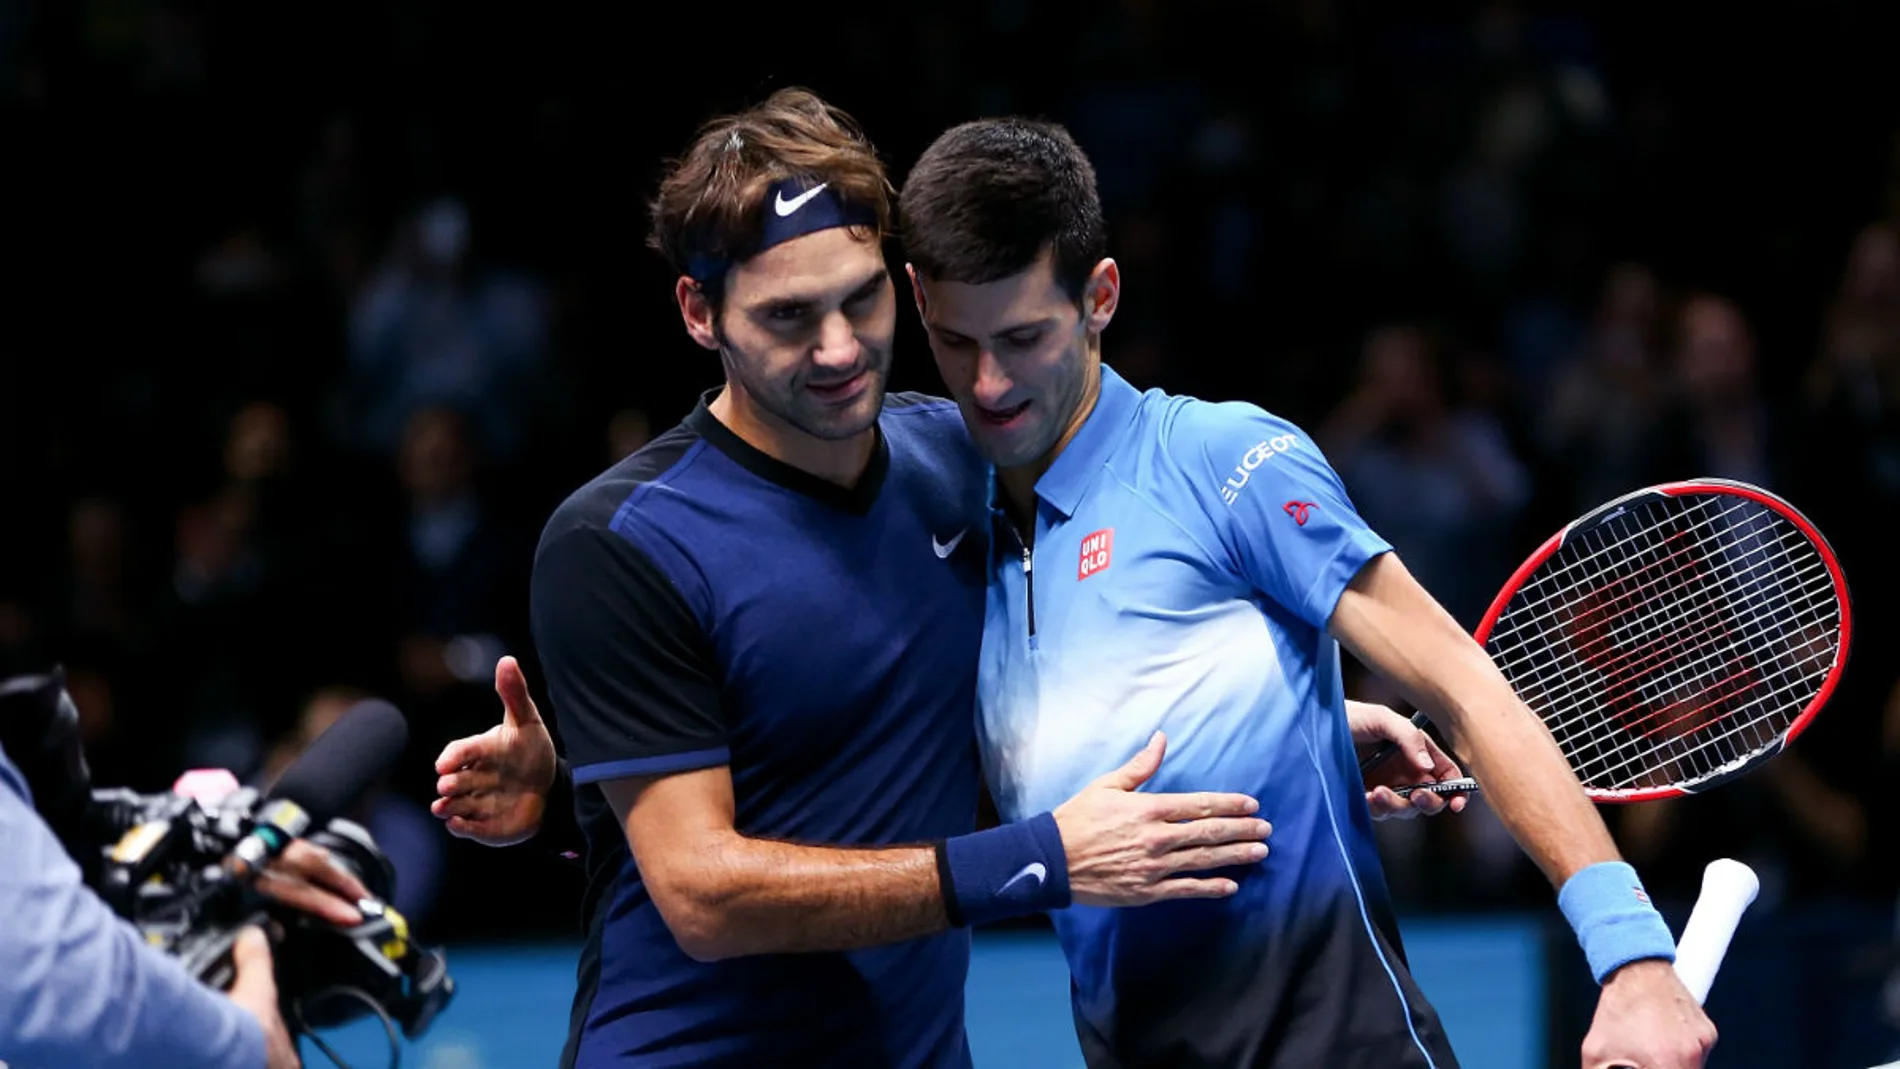 Roger Federer es felicitado por Djokovic tras la victoria